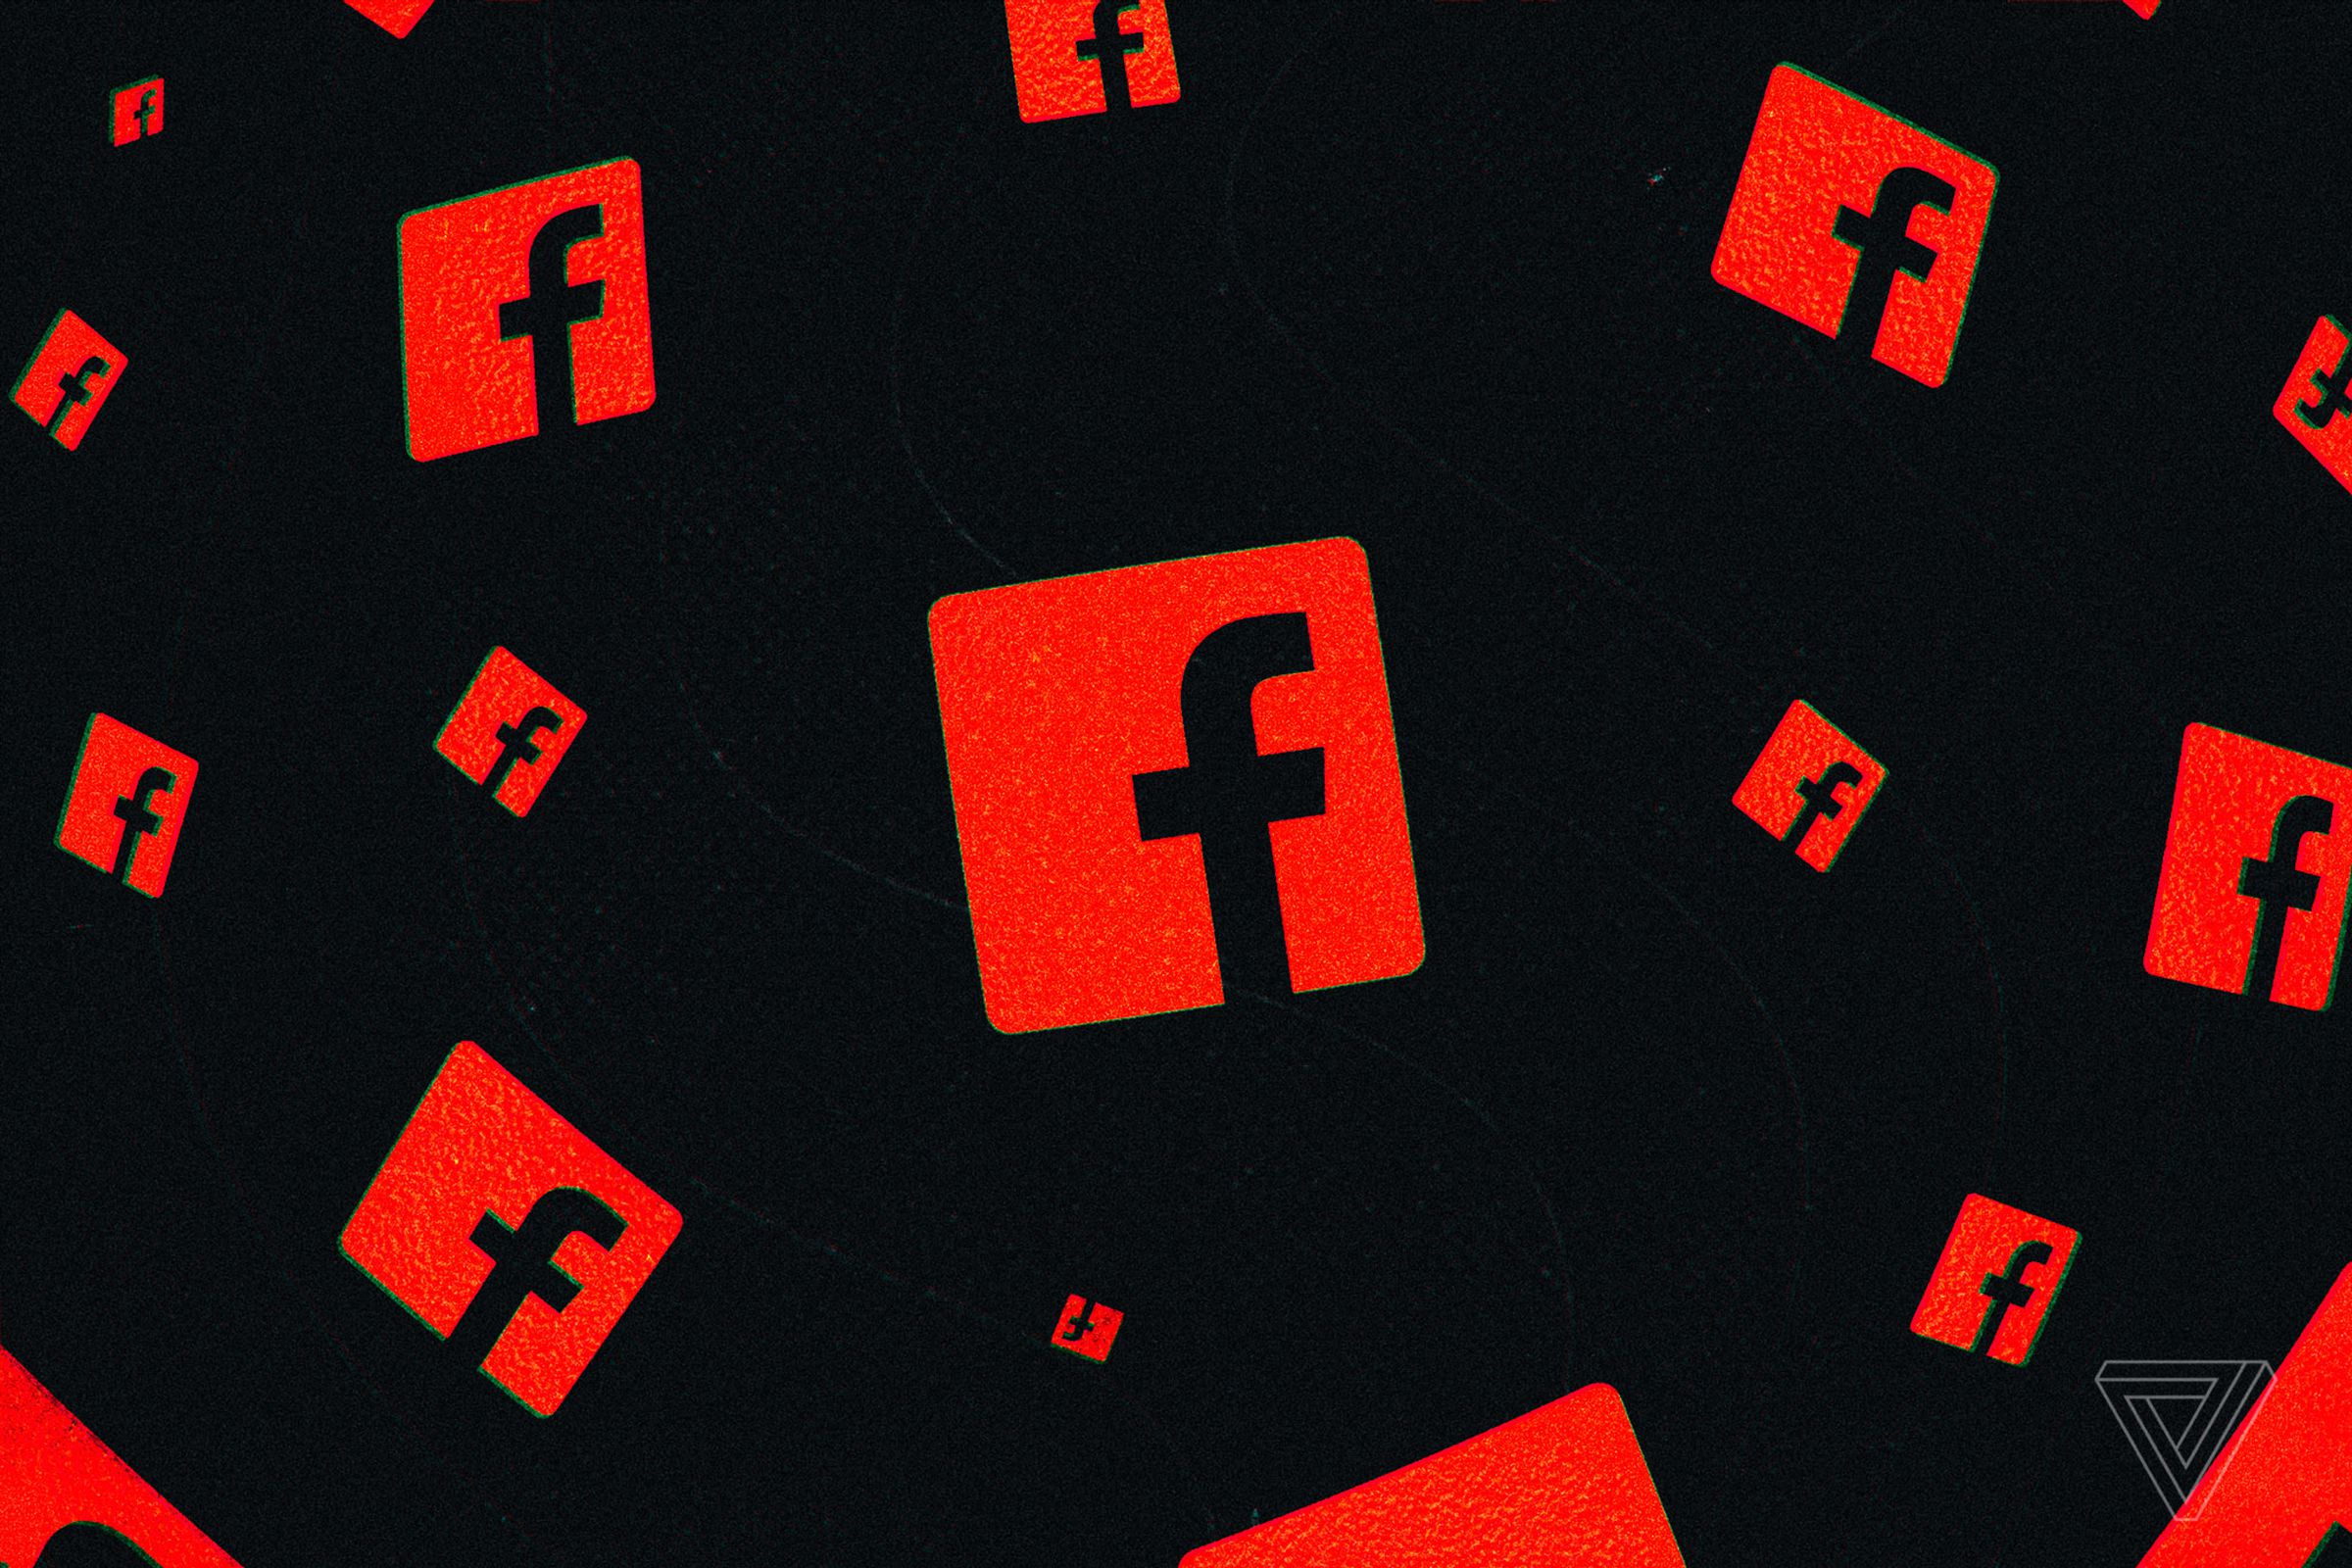 Ohio is suing Facebook